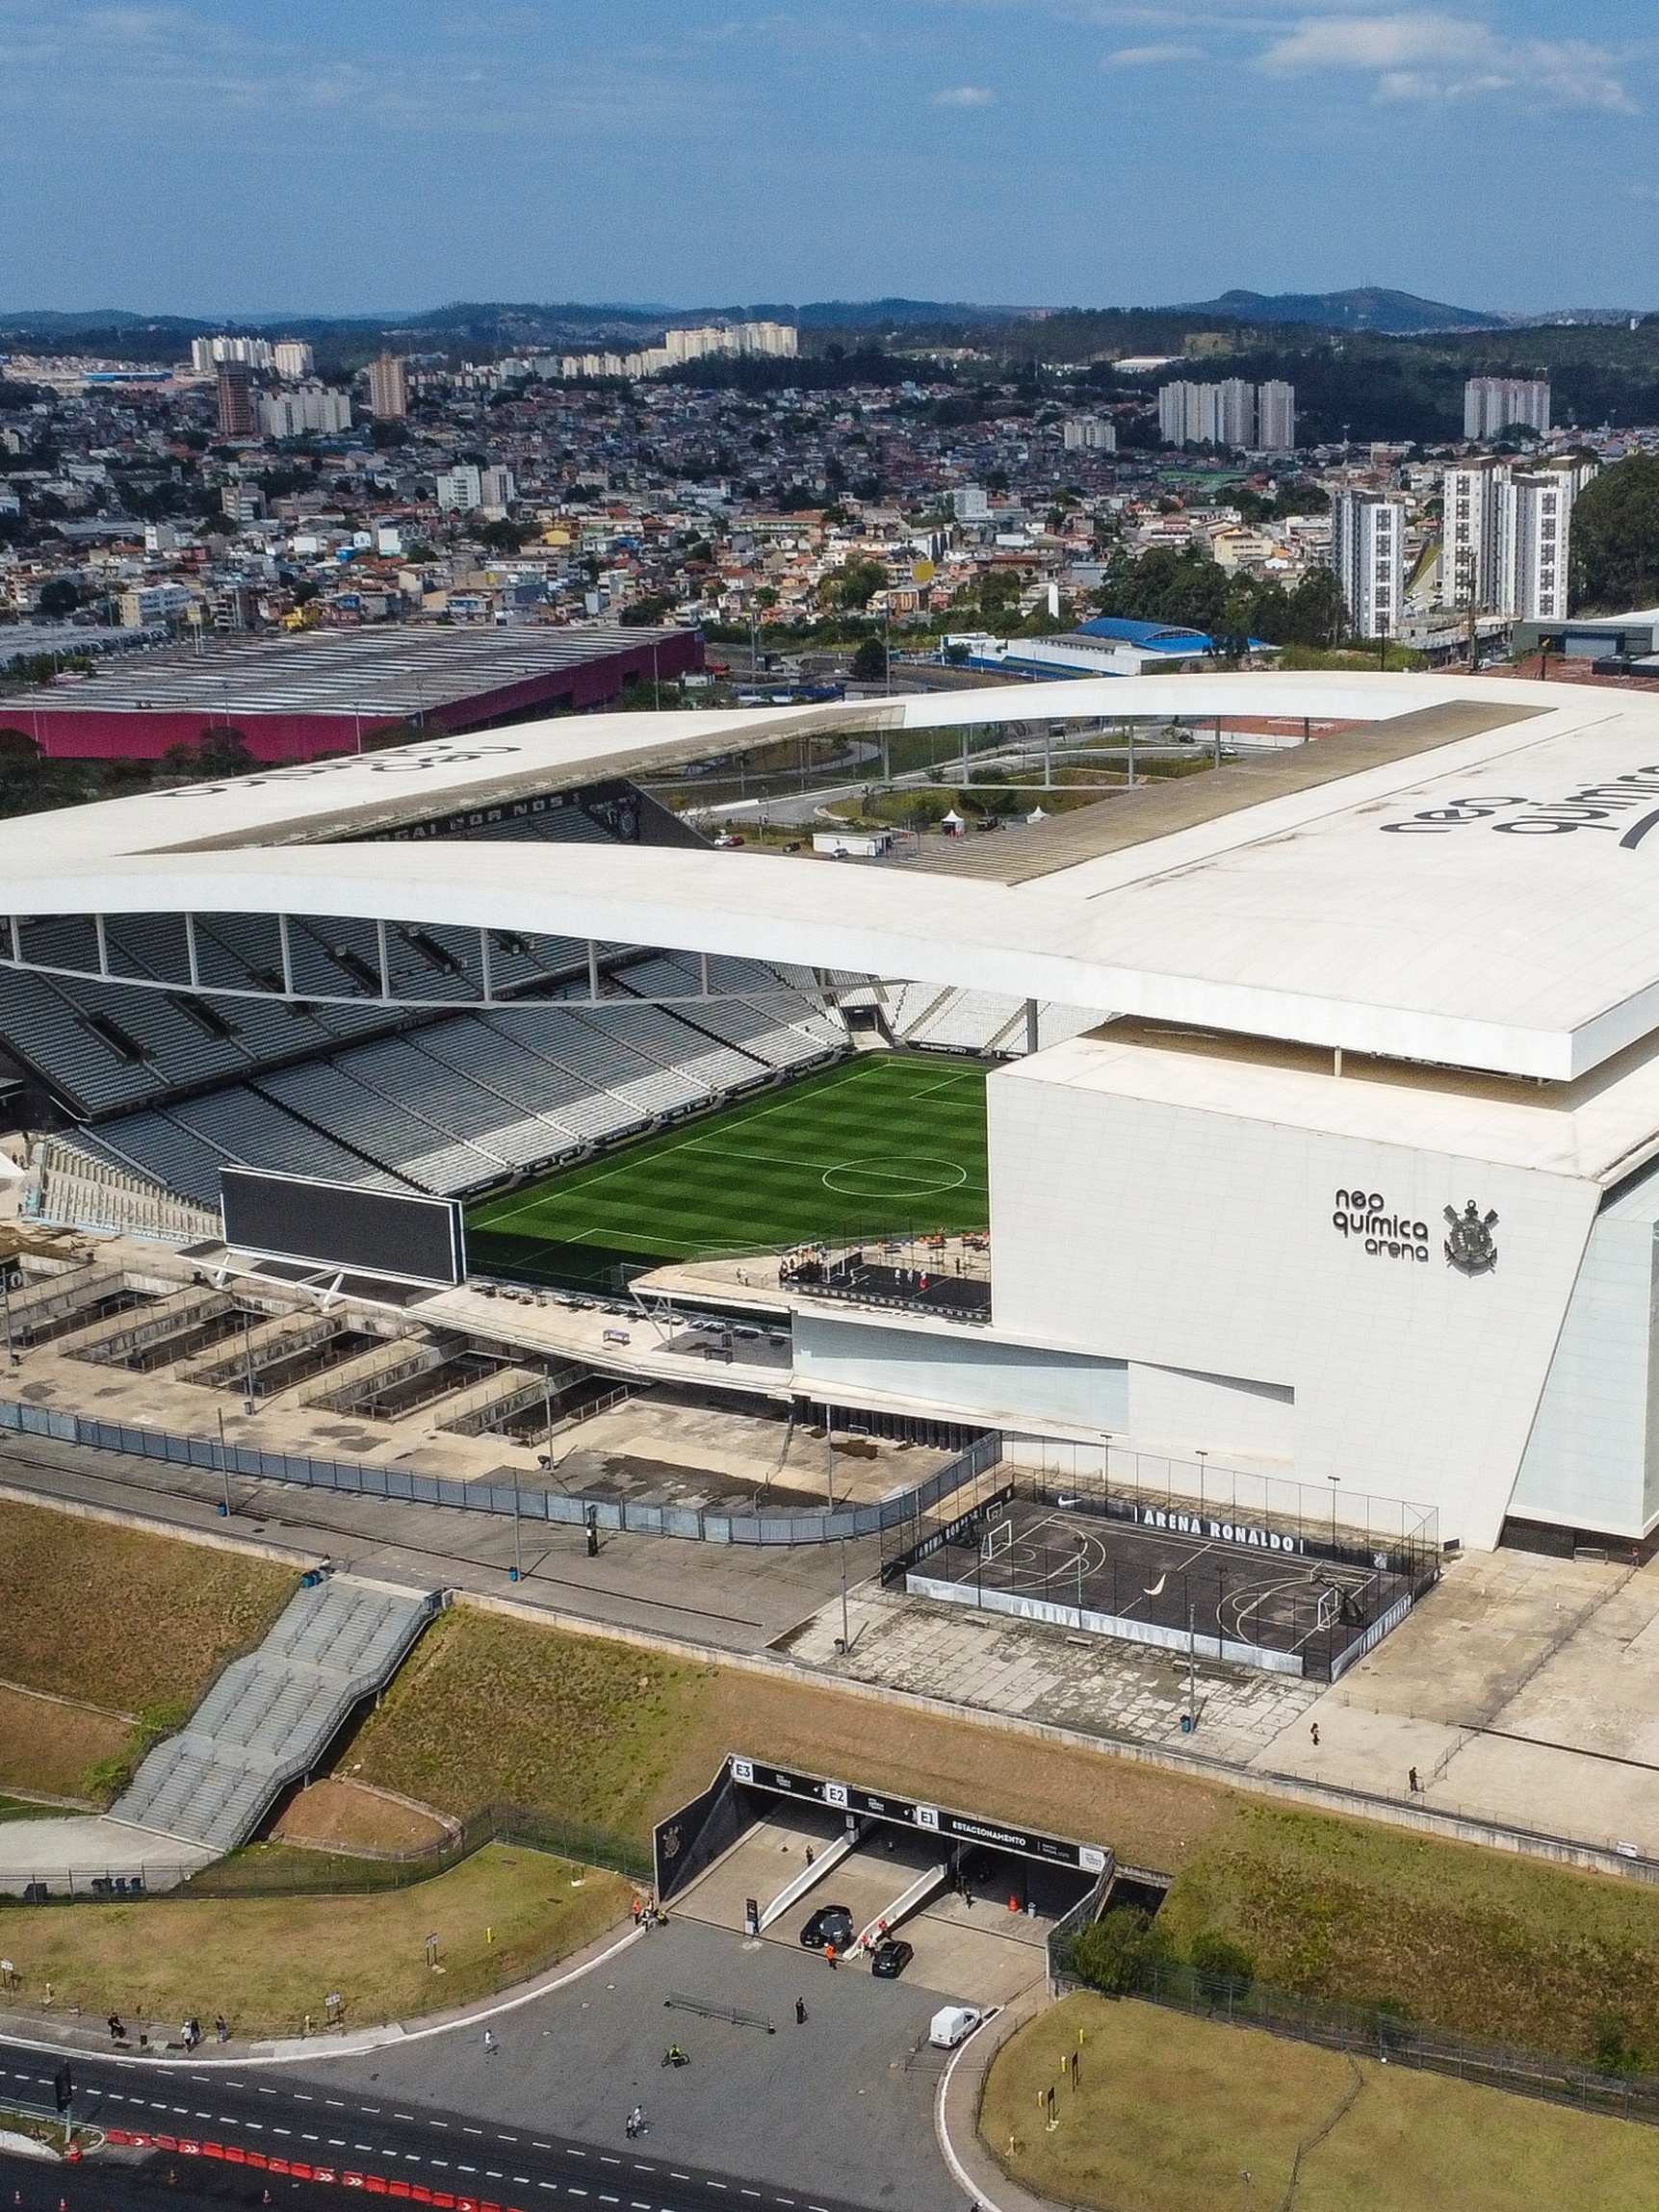 São Paulo receberá partida da temporada regular da NFL em 2024/25